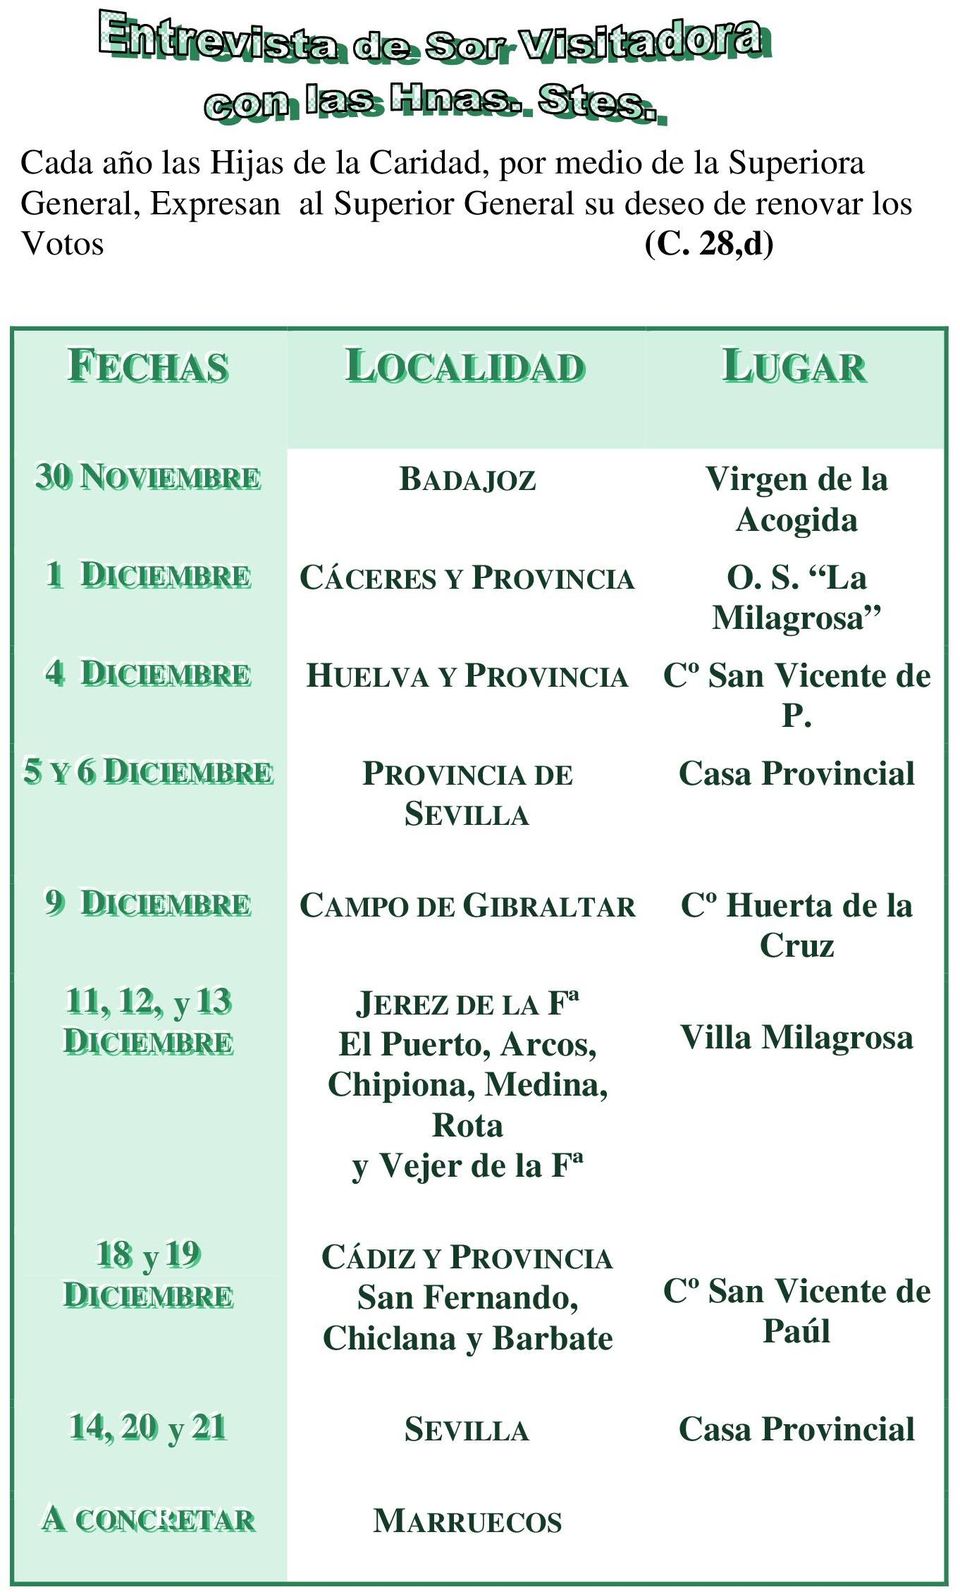 La Milagrosa 44 DICCI IEEMBBRREE HUELVA Y PROVINCIA Cº San Vicente de P.